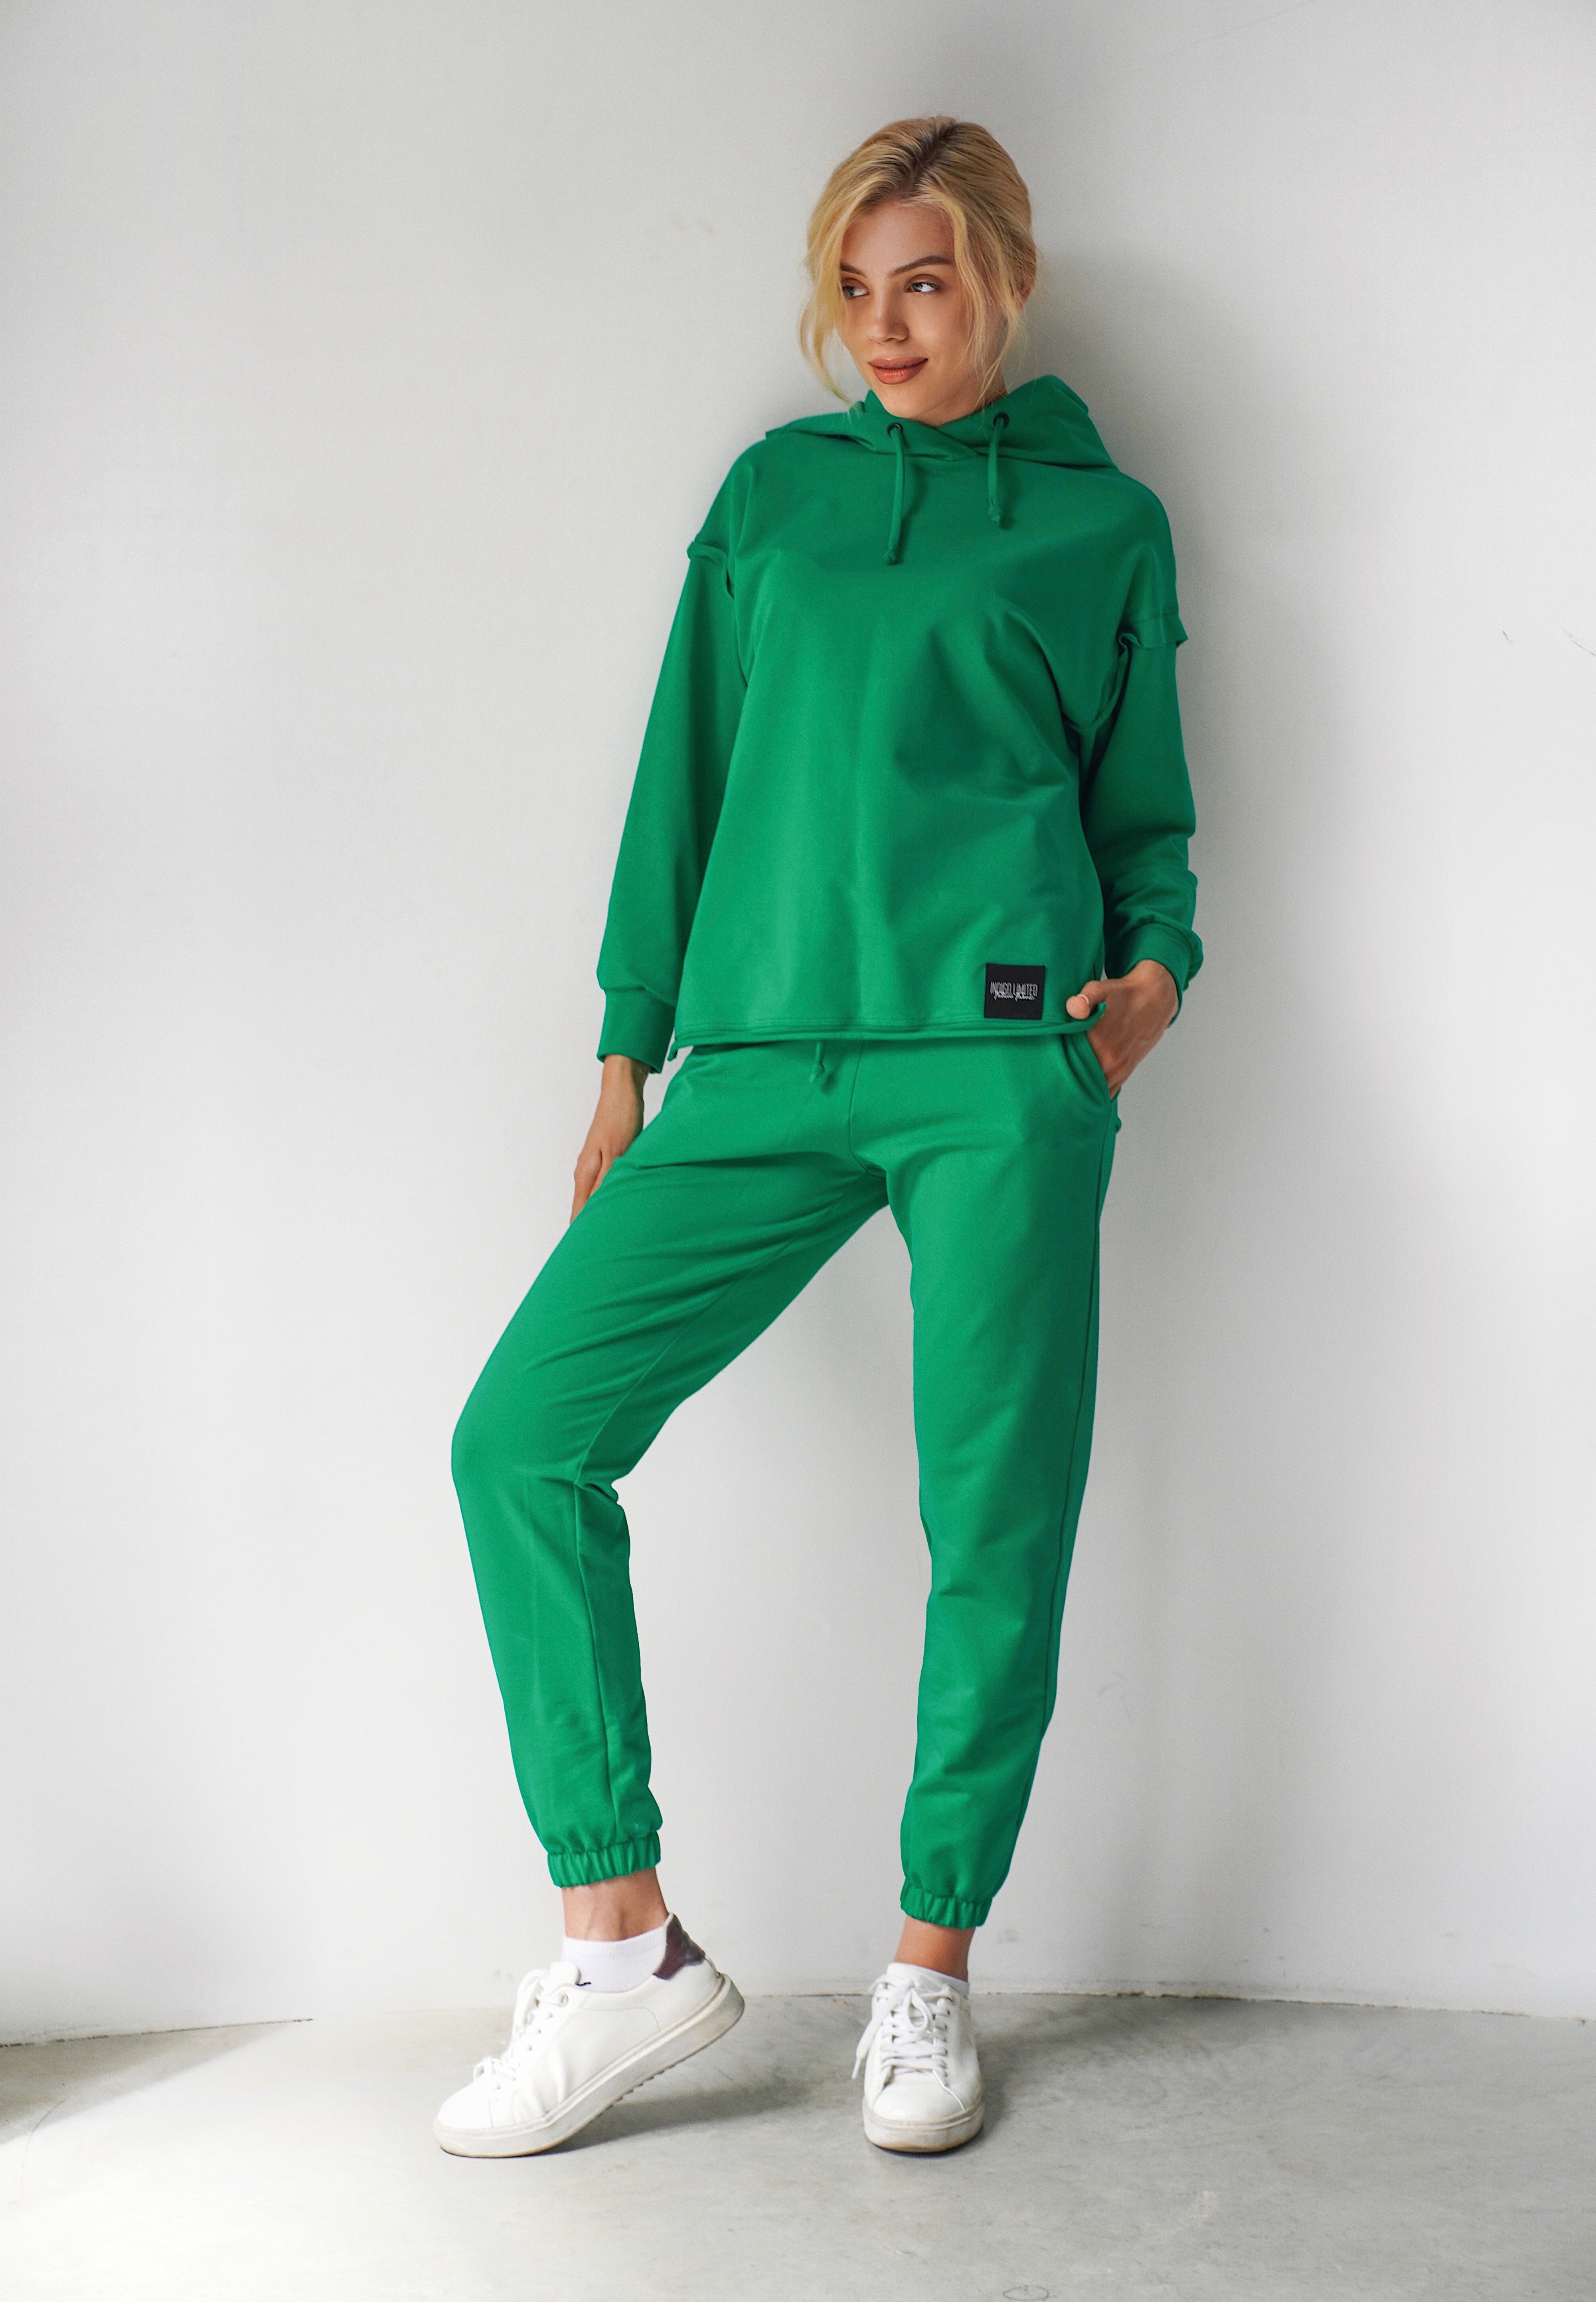 Женский летний спортивный костюм с капюшоном indigo.limited ID 125 Зелёный XXL